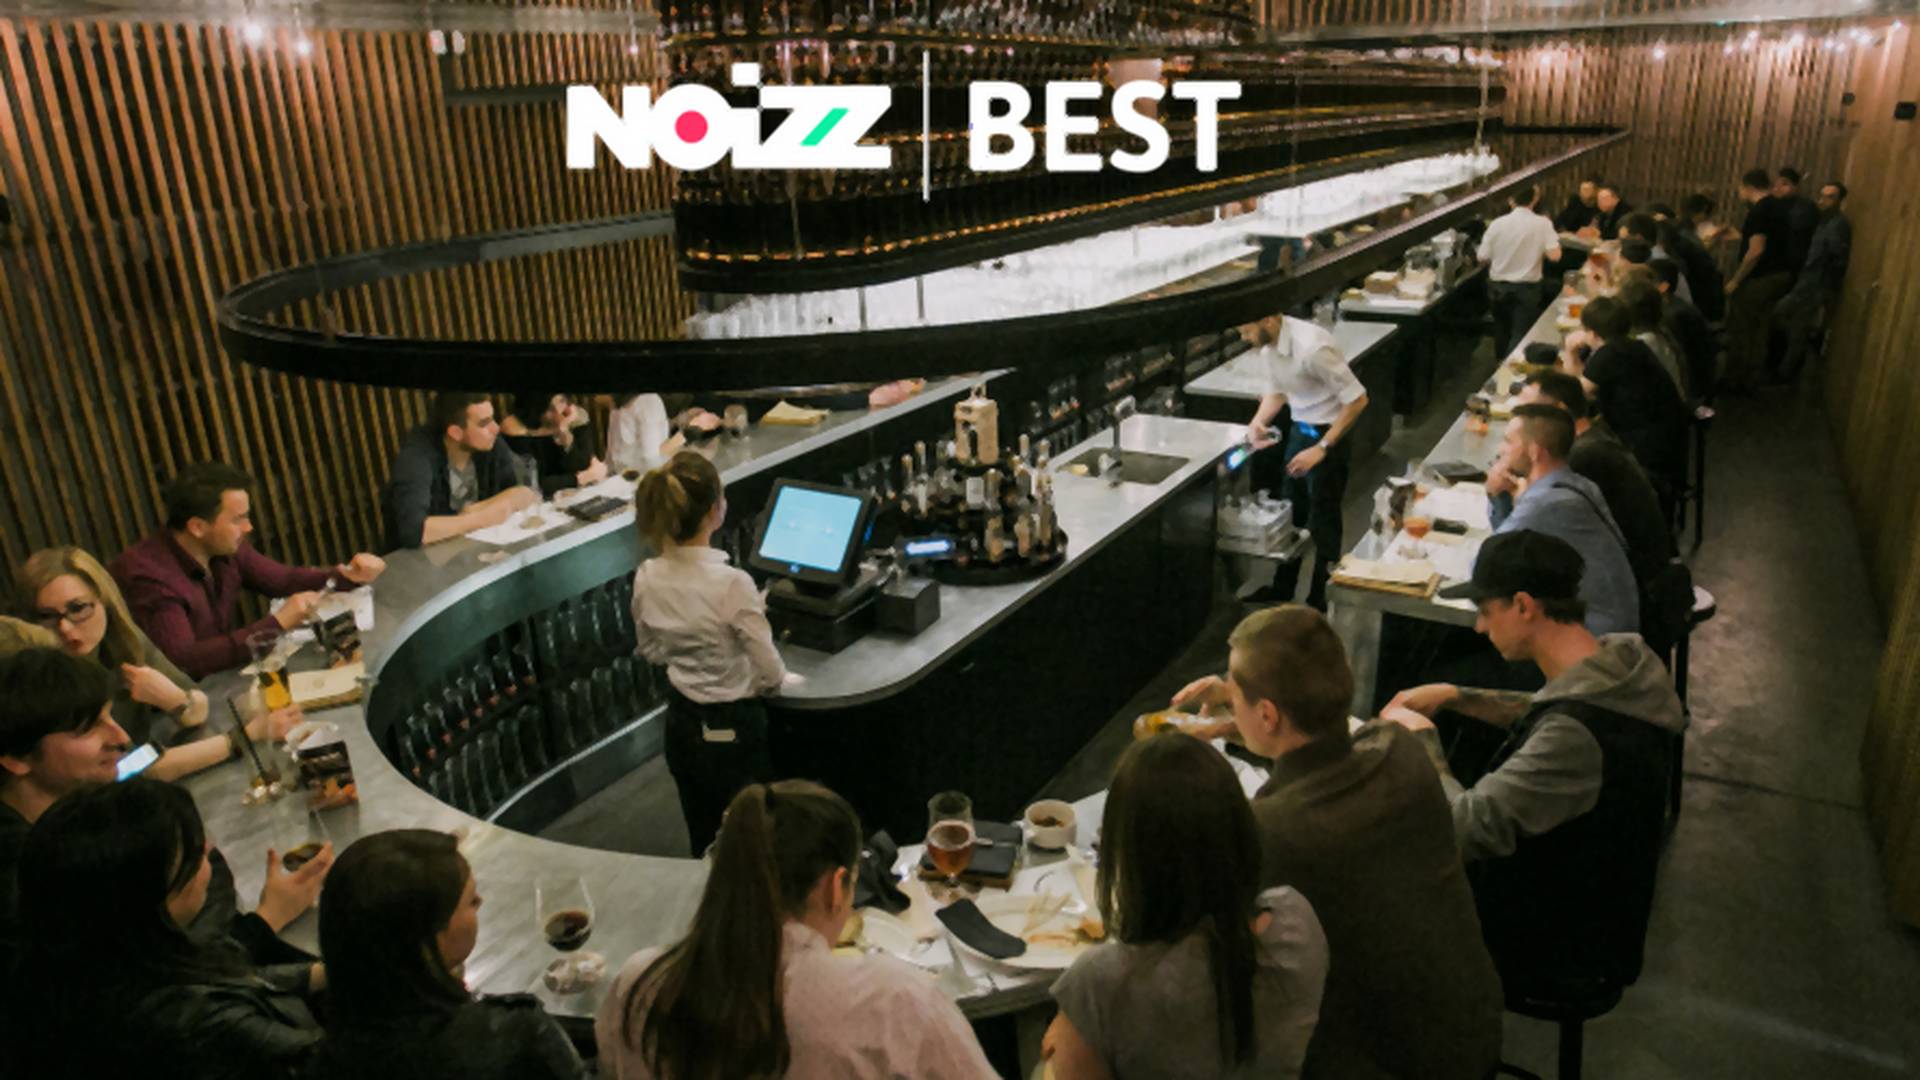 NOIZZbest: Jedna z najlepszych restauracji w Lublinie znajduje się w pijalni piwa – Perłowej Pijalni Piwa